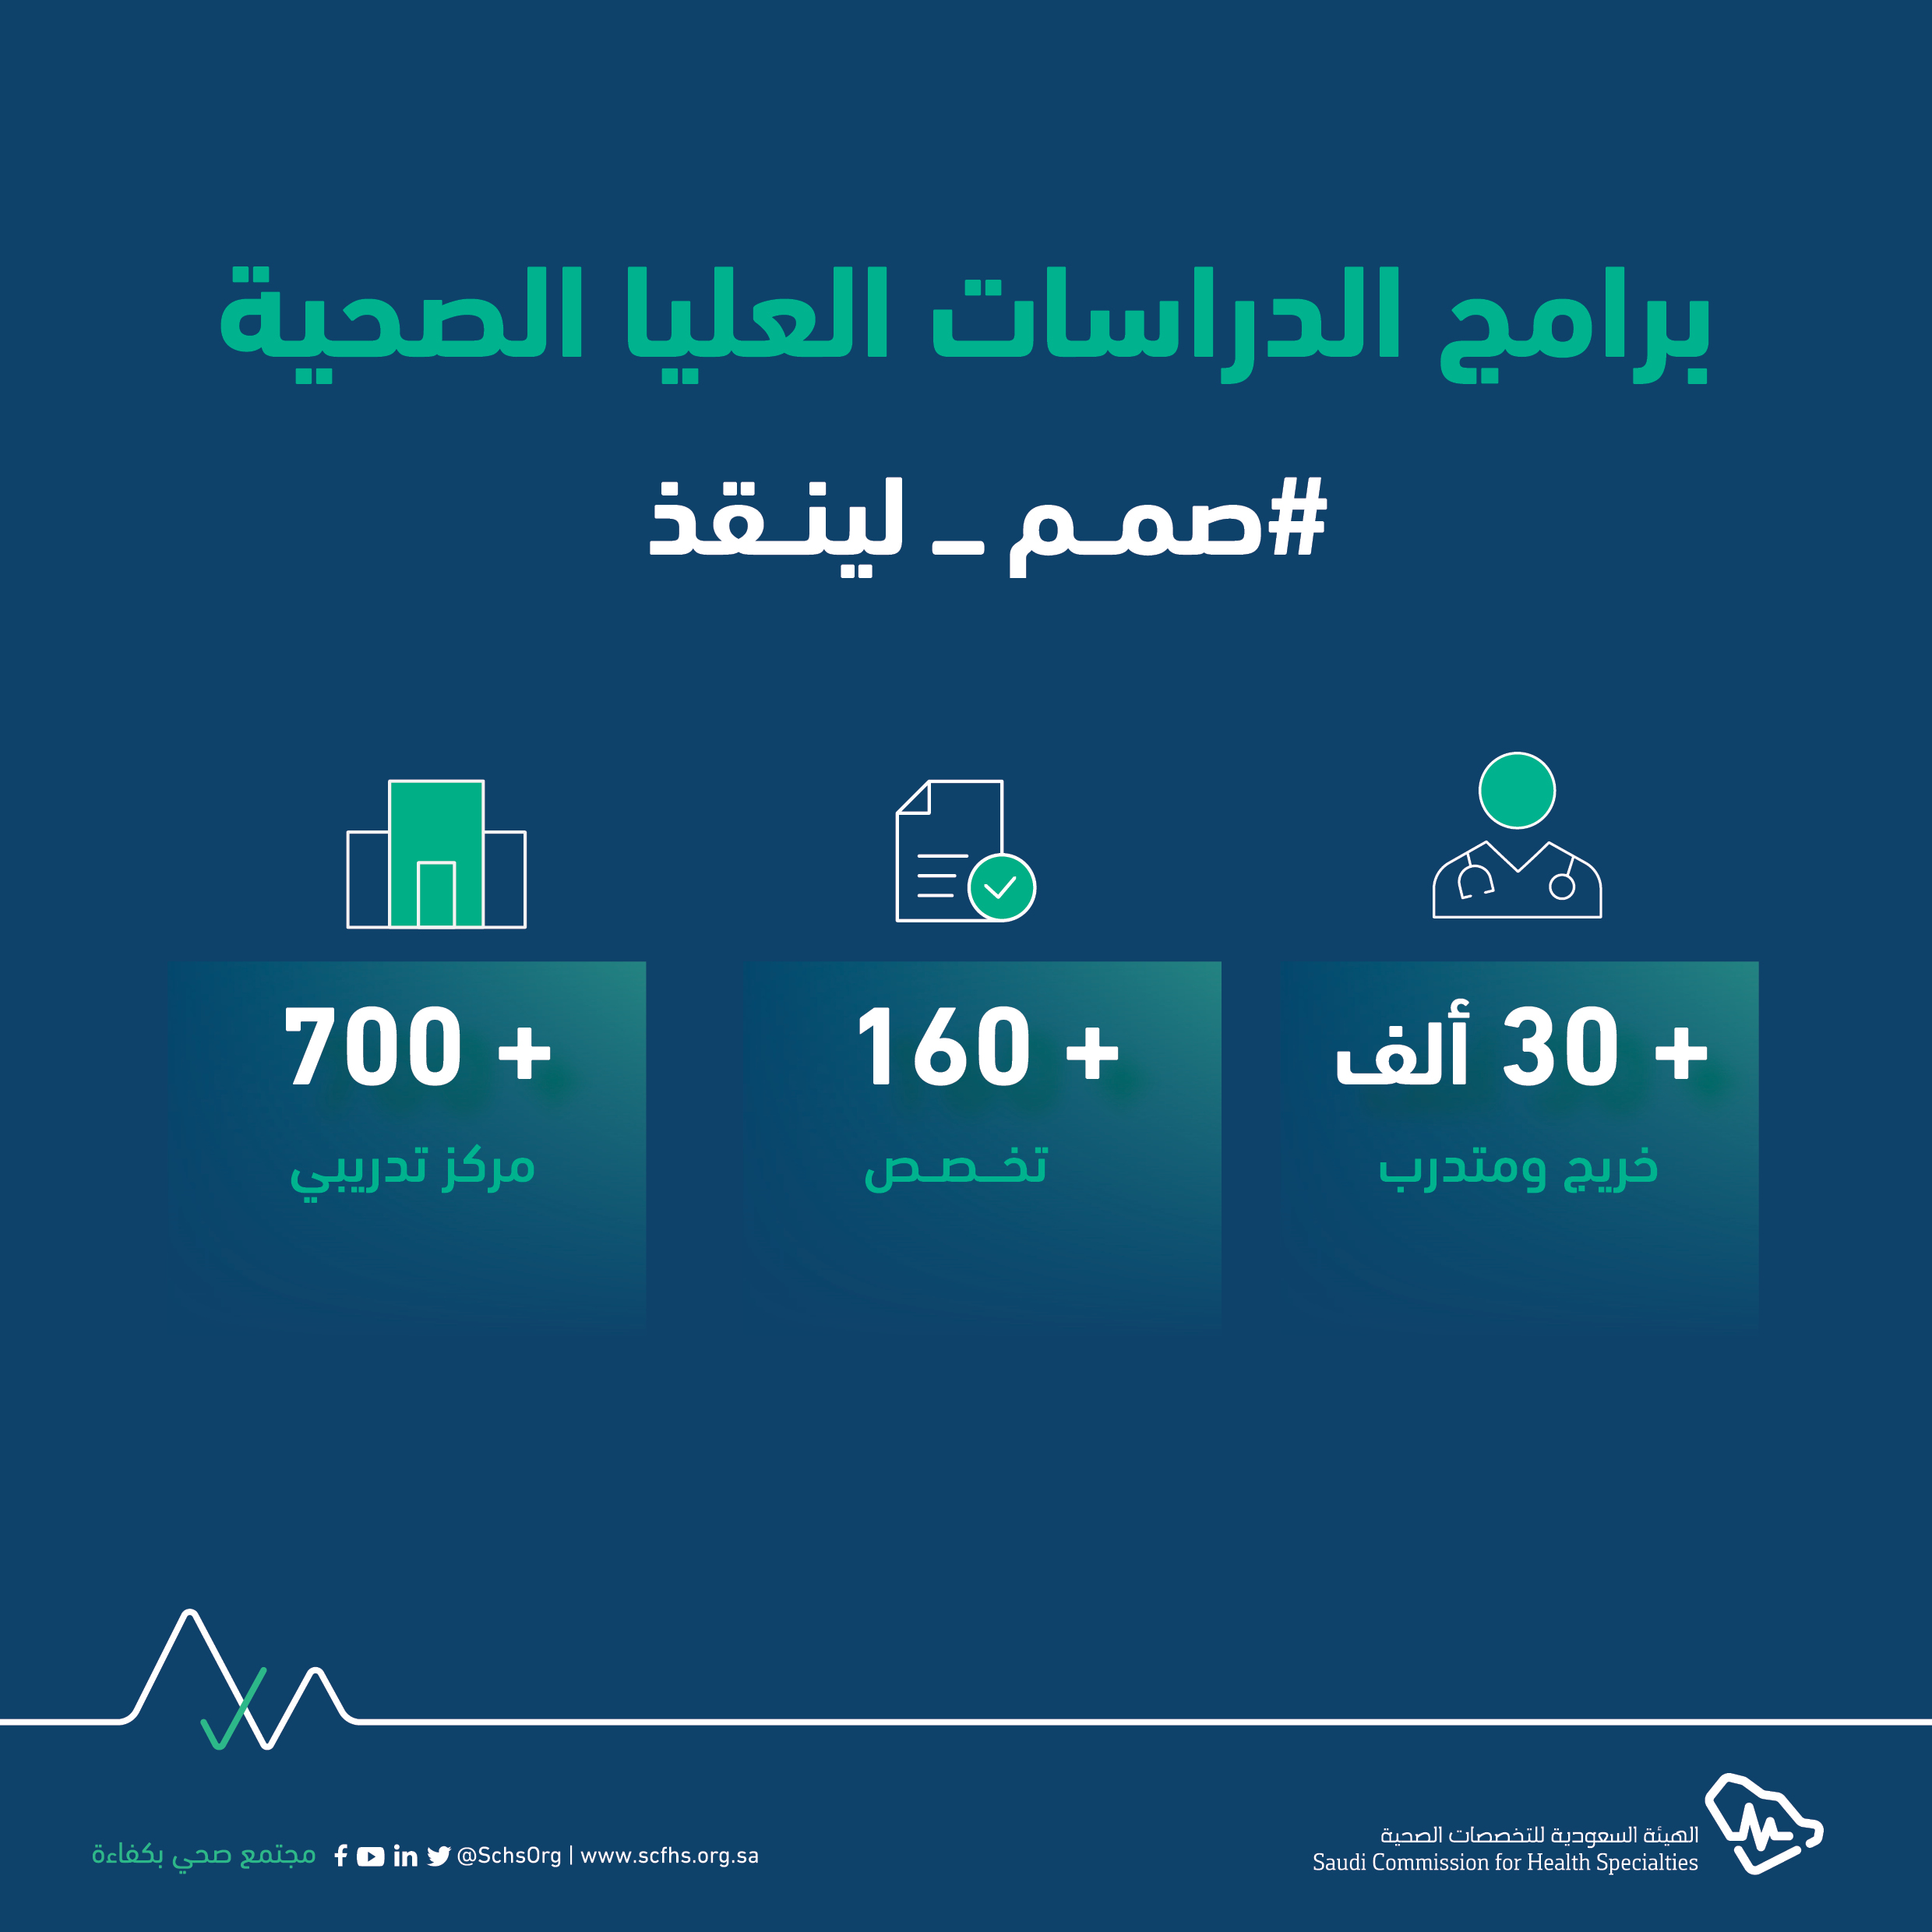 فخرًا بالبورد السعودي الهيئة السعودية للتخصصات الصحية تطلق حملة بعنوان «صُمم لينقذ»